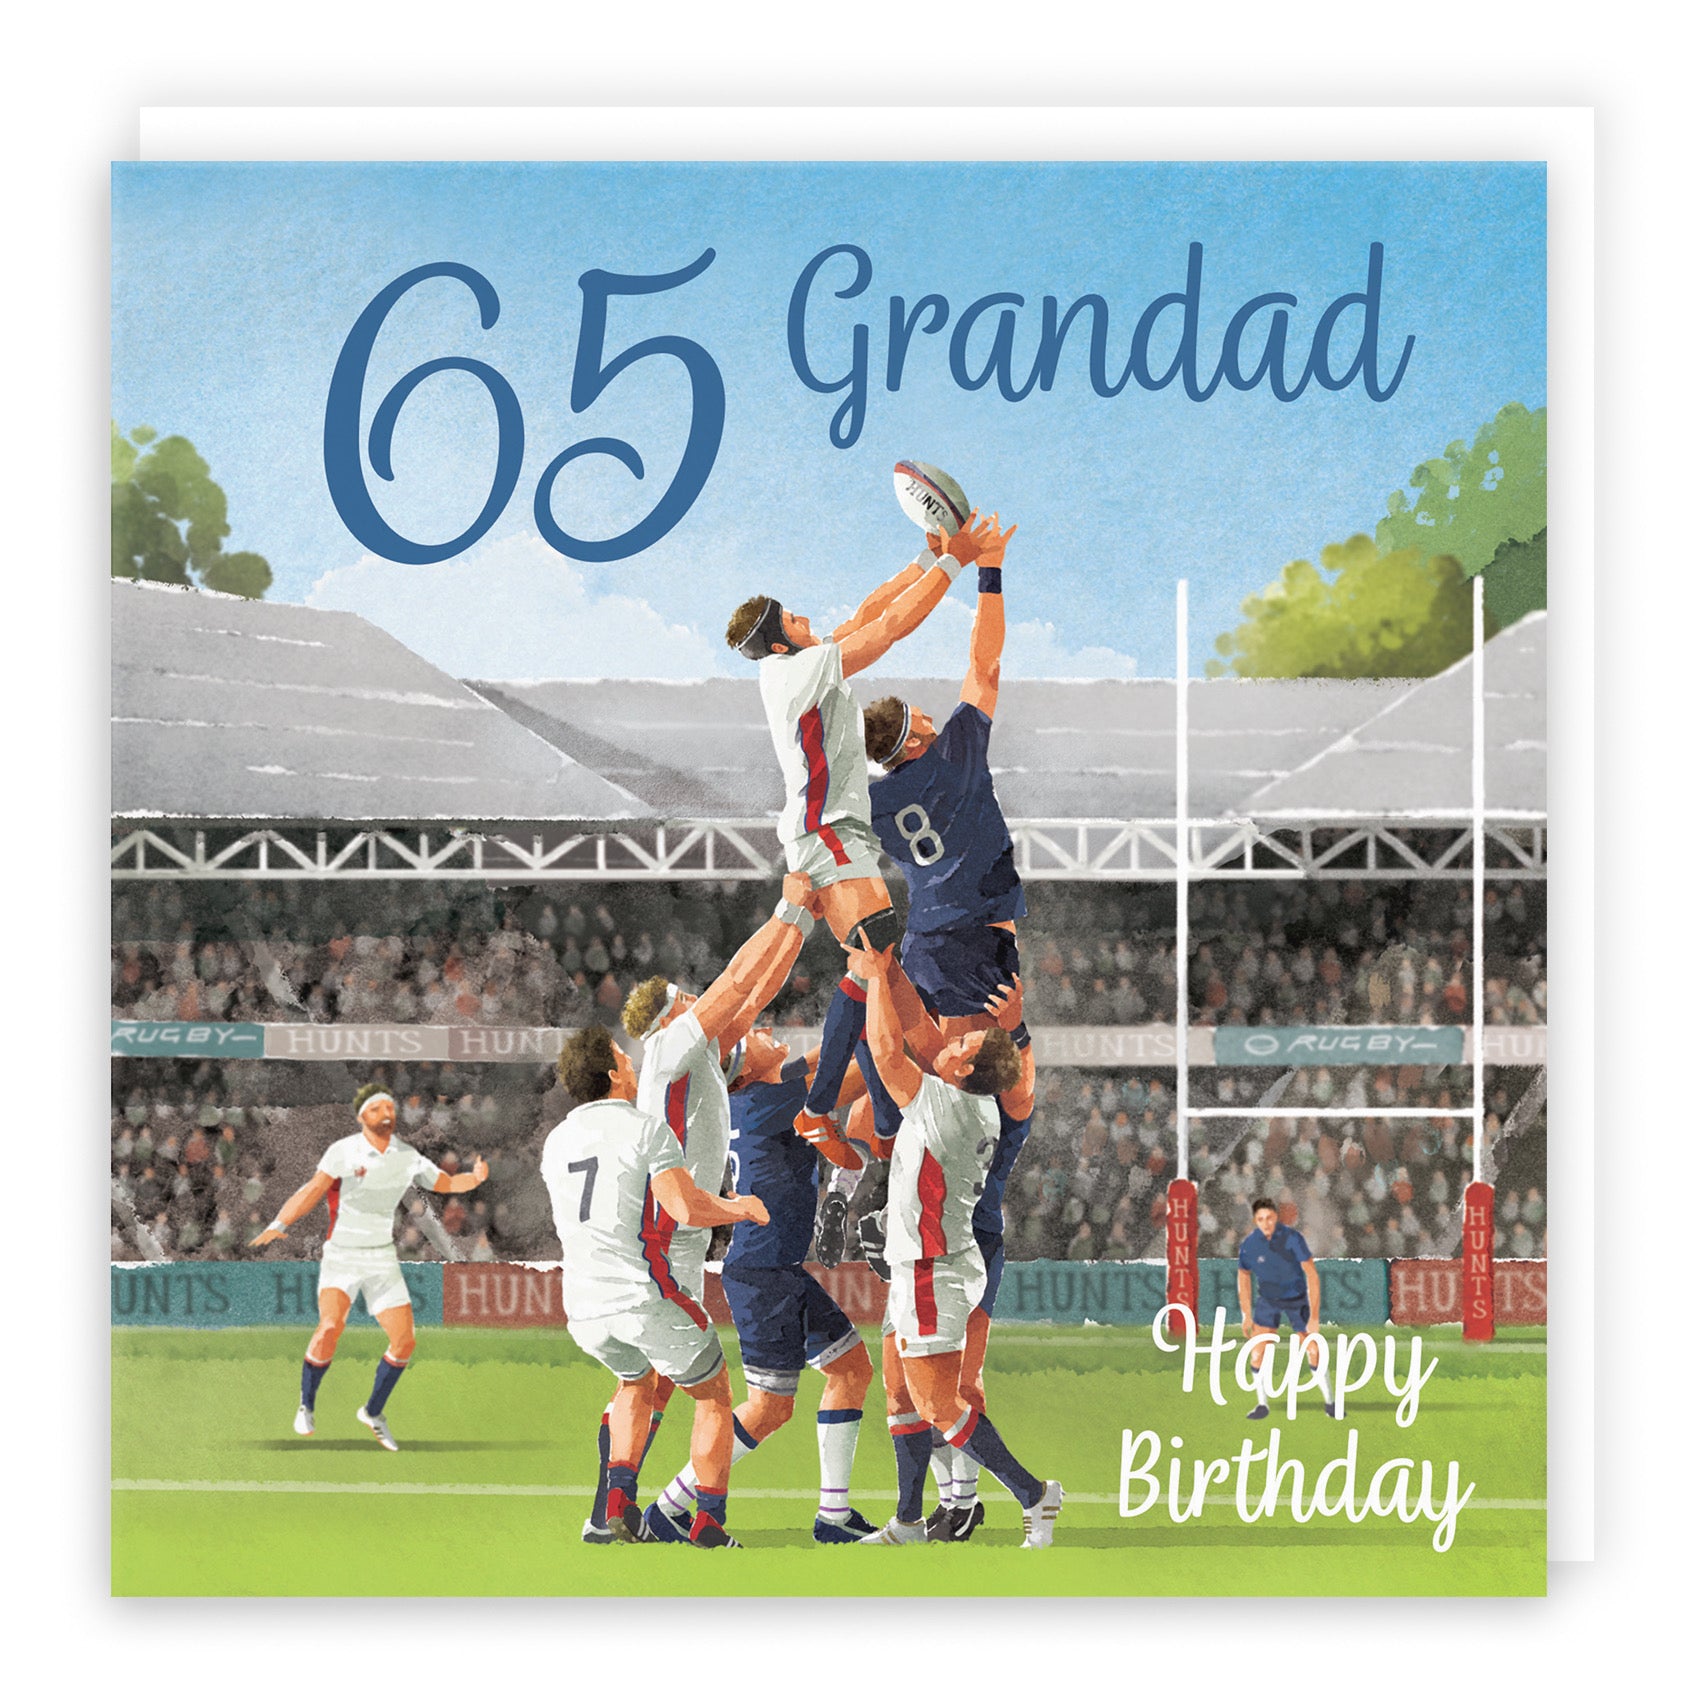 65th Grandad Rugby Birthday Card Milo's Gallery - Default Title (B0CPR1YR2K)